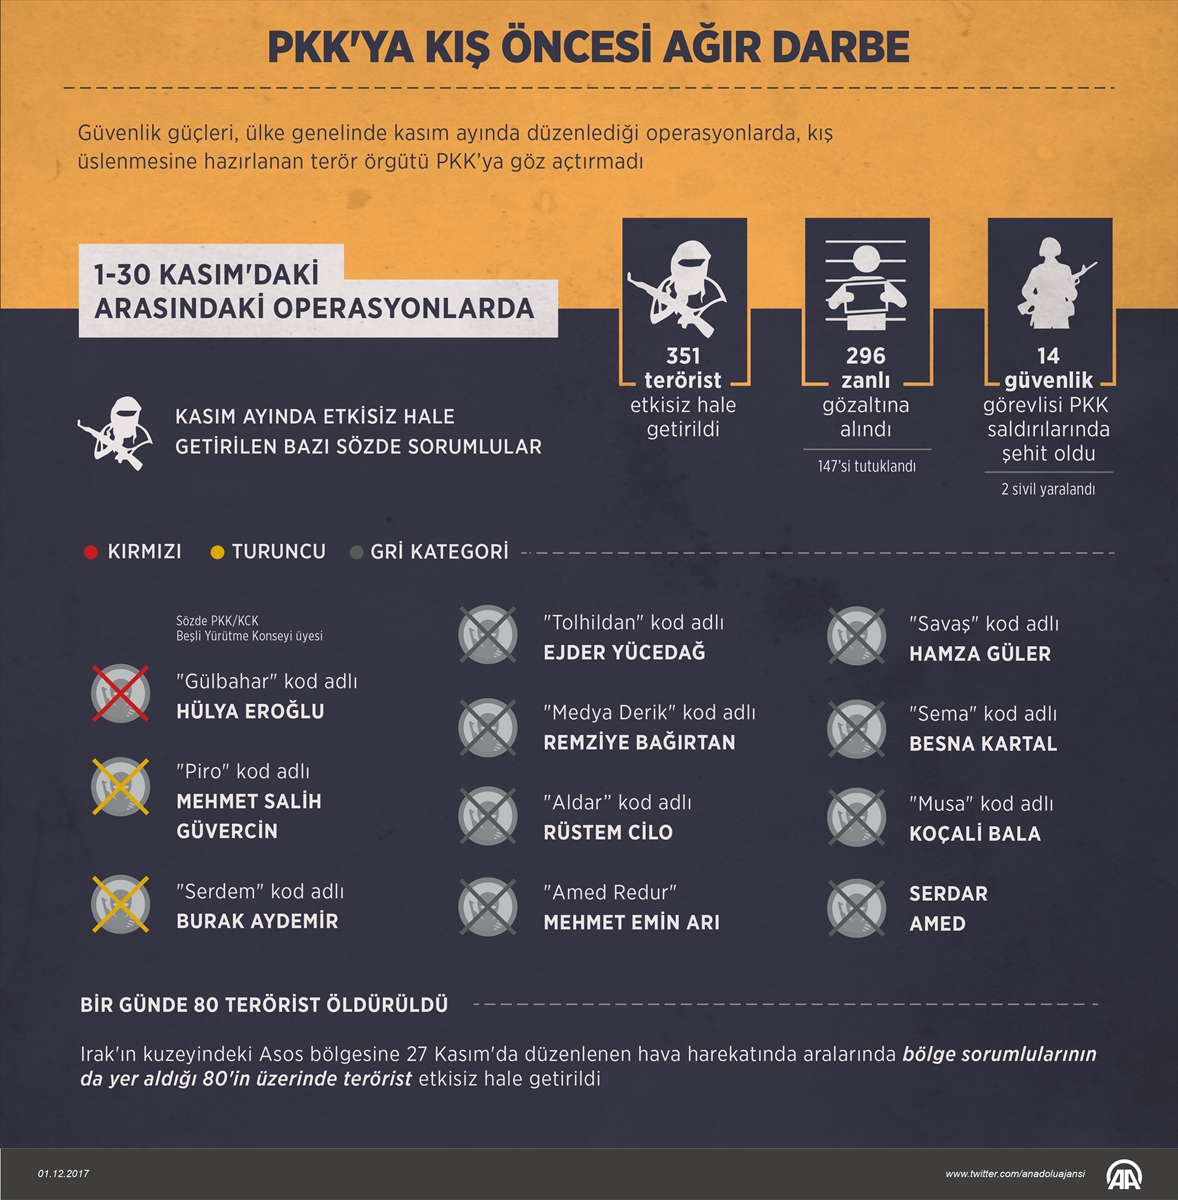 Kasım ayında 351 PKK'lı terörist öldürüldü